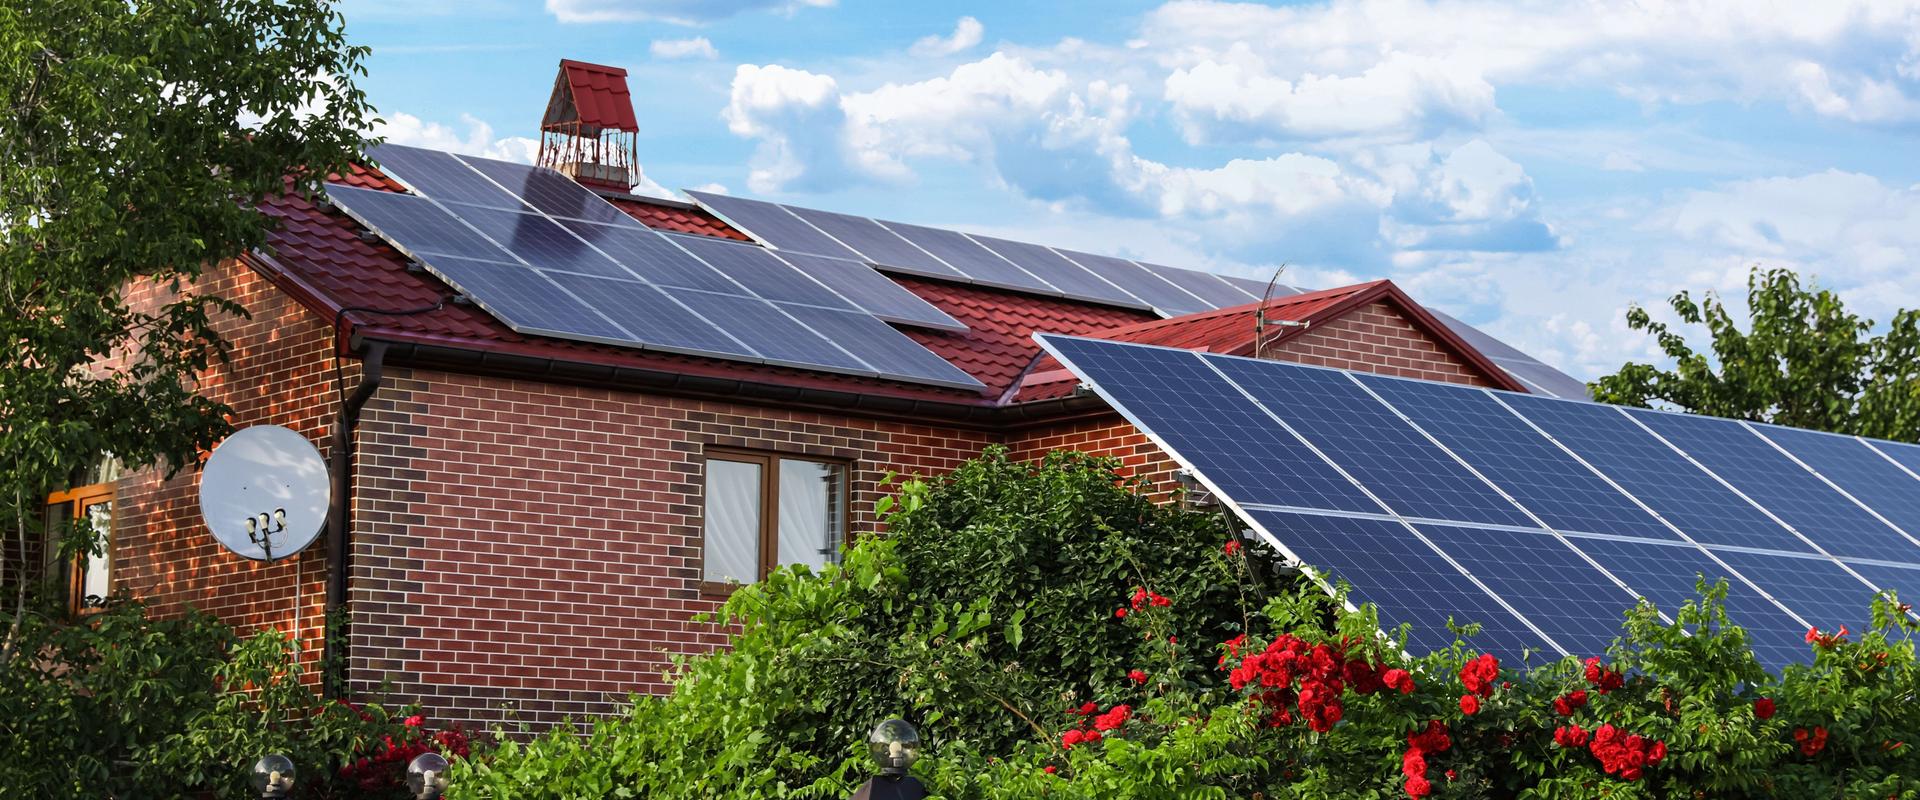 Haus mit installierten Sonnenkollektoren auf dem Dach. Alternative Energiequelle